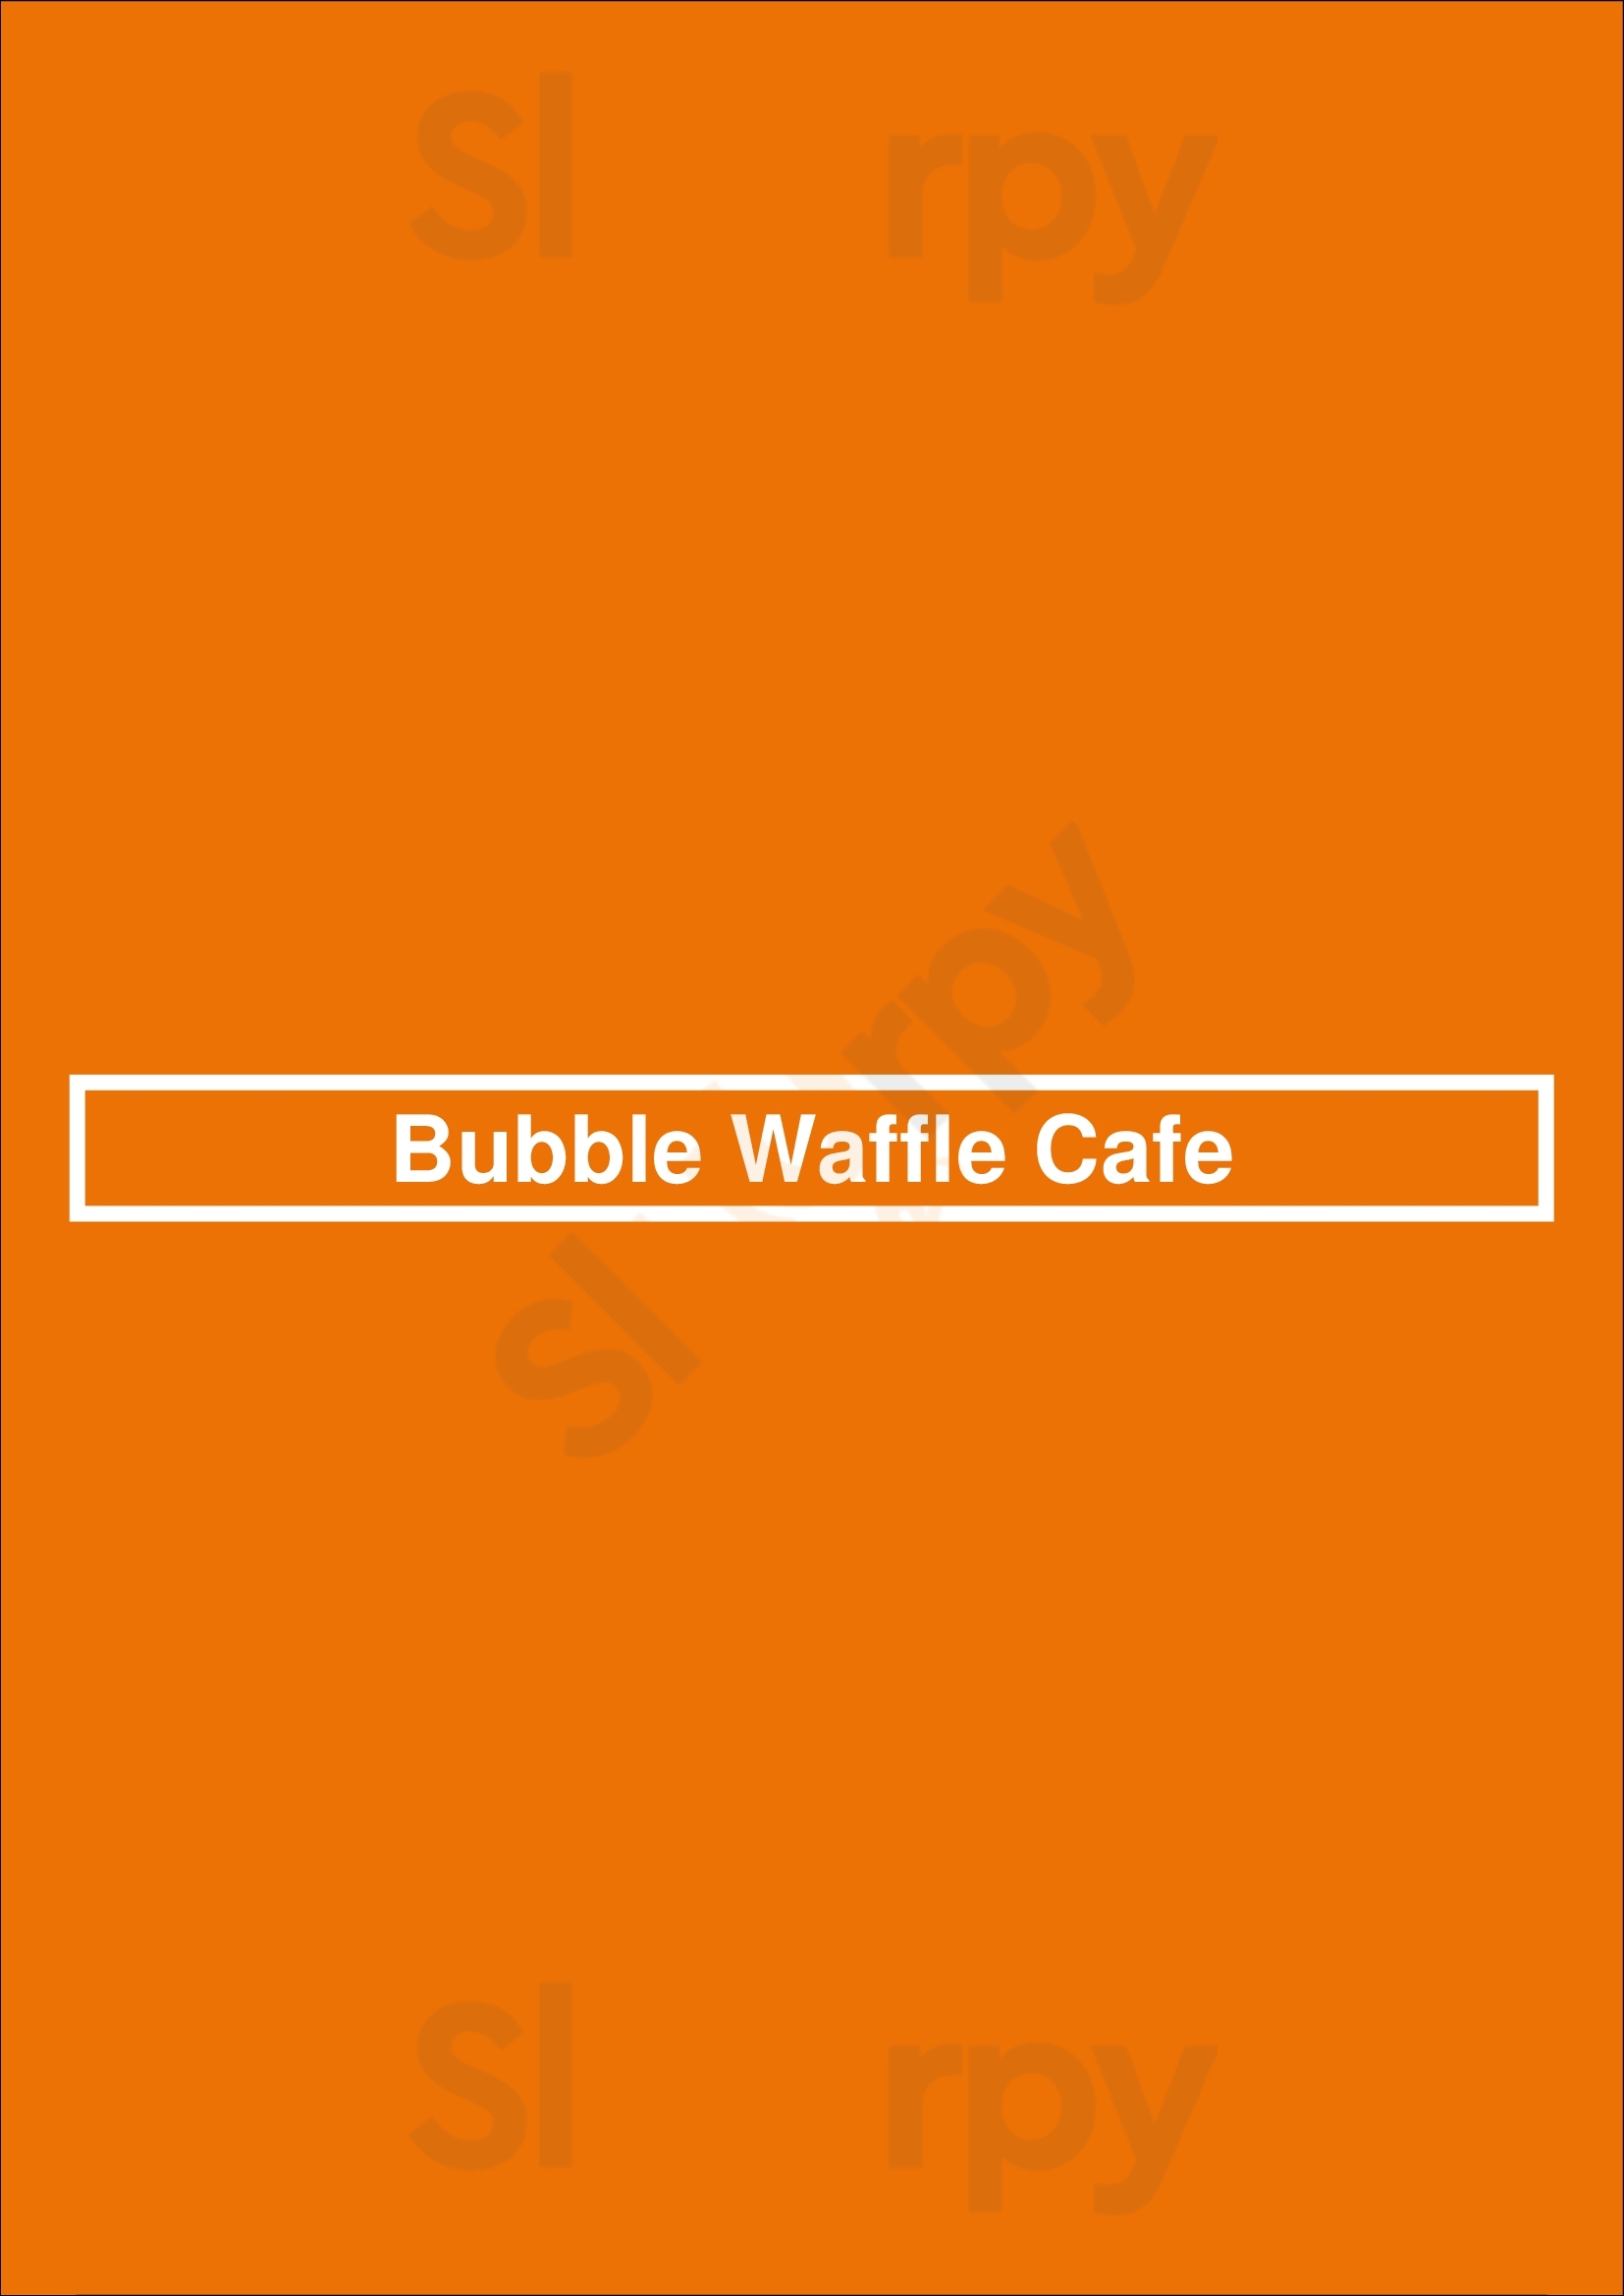 Bubble Waffle Cafe Richmond Menu - 1